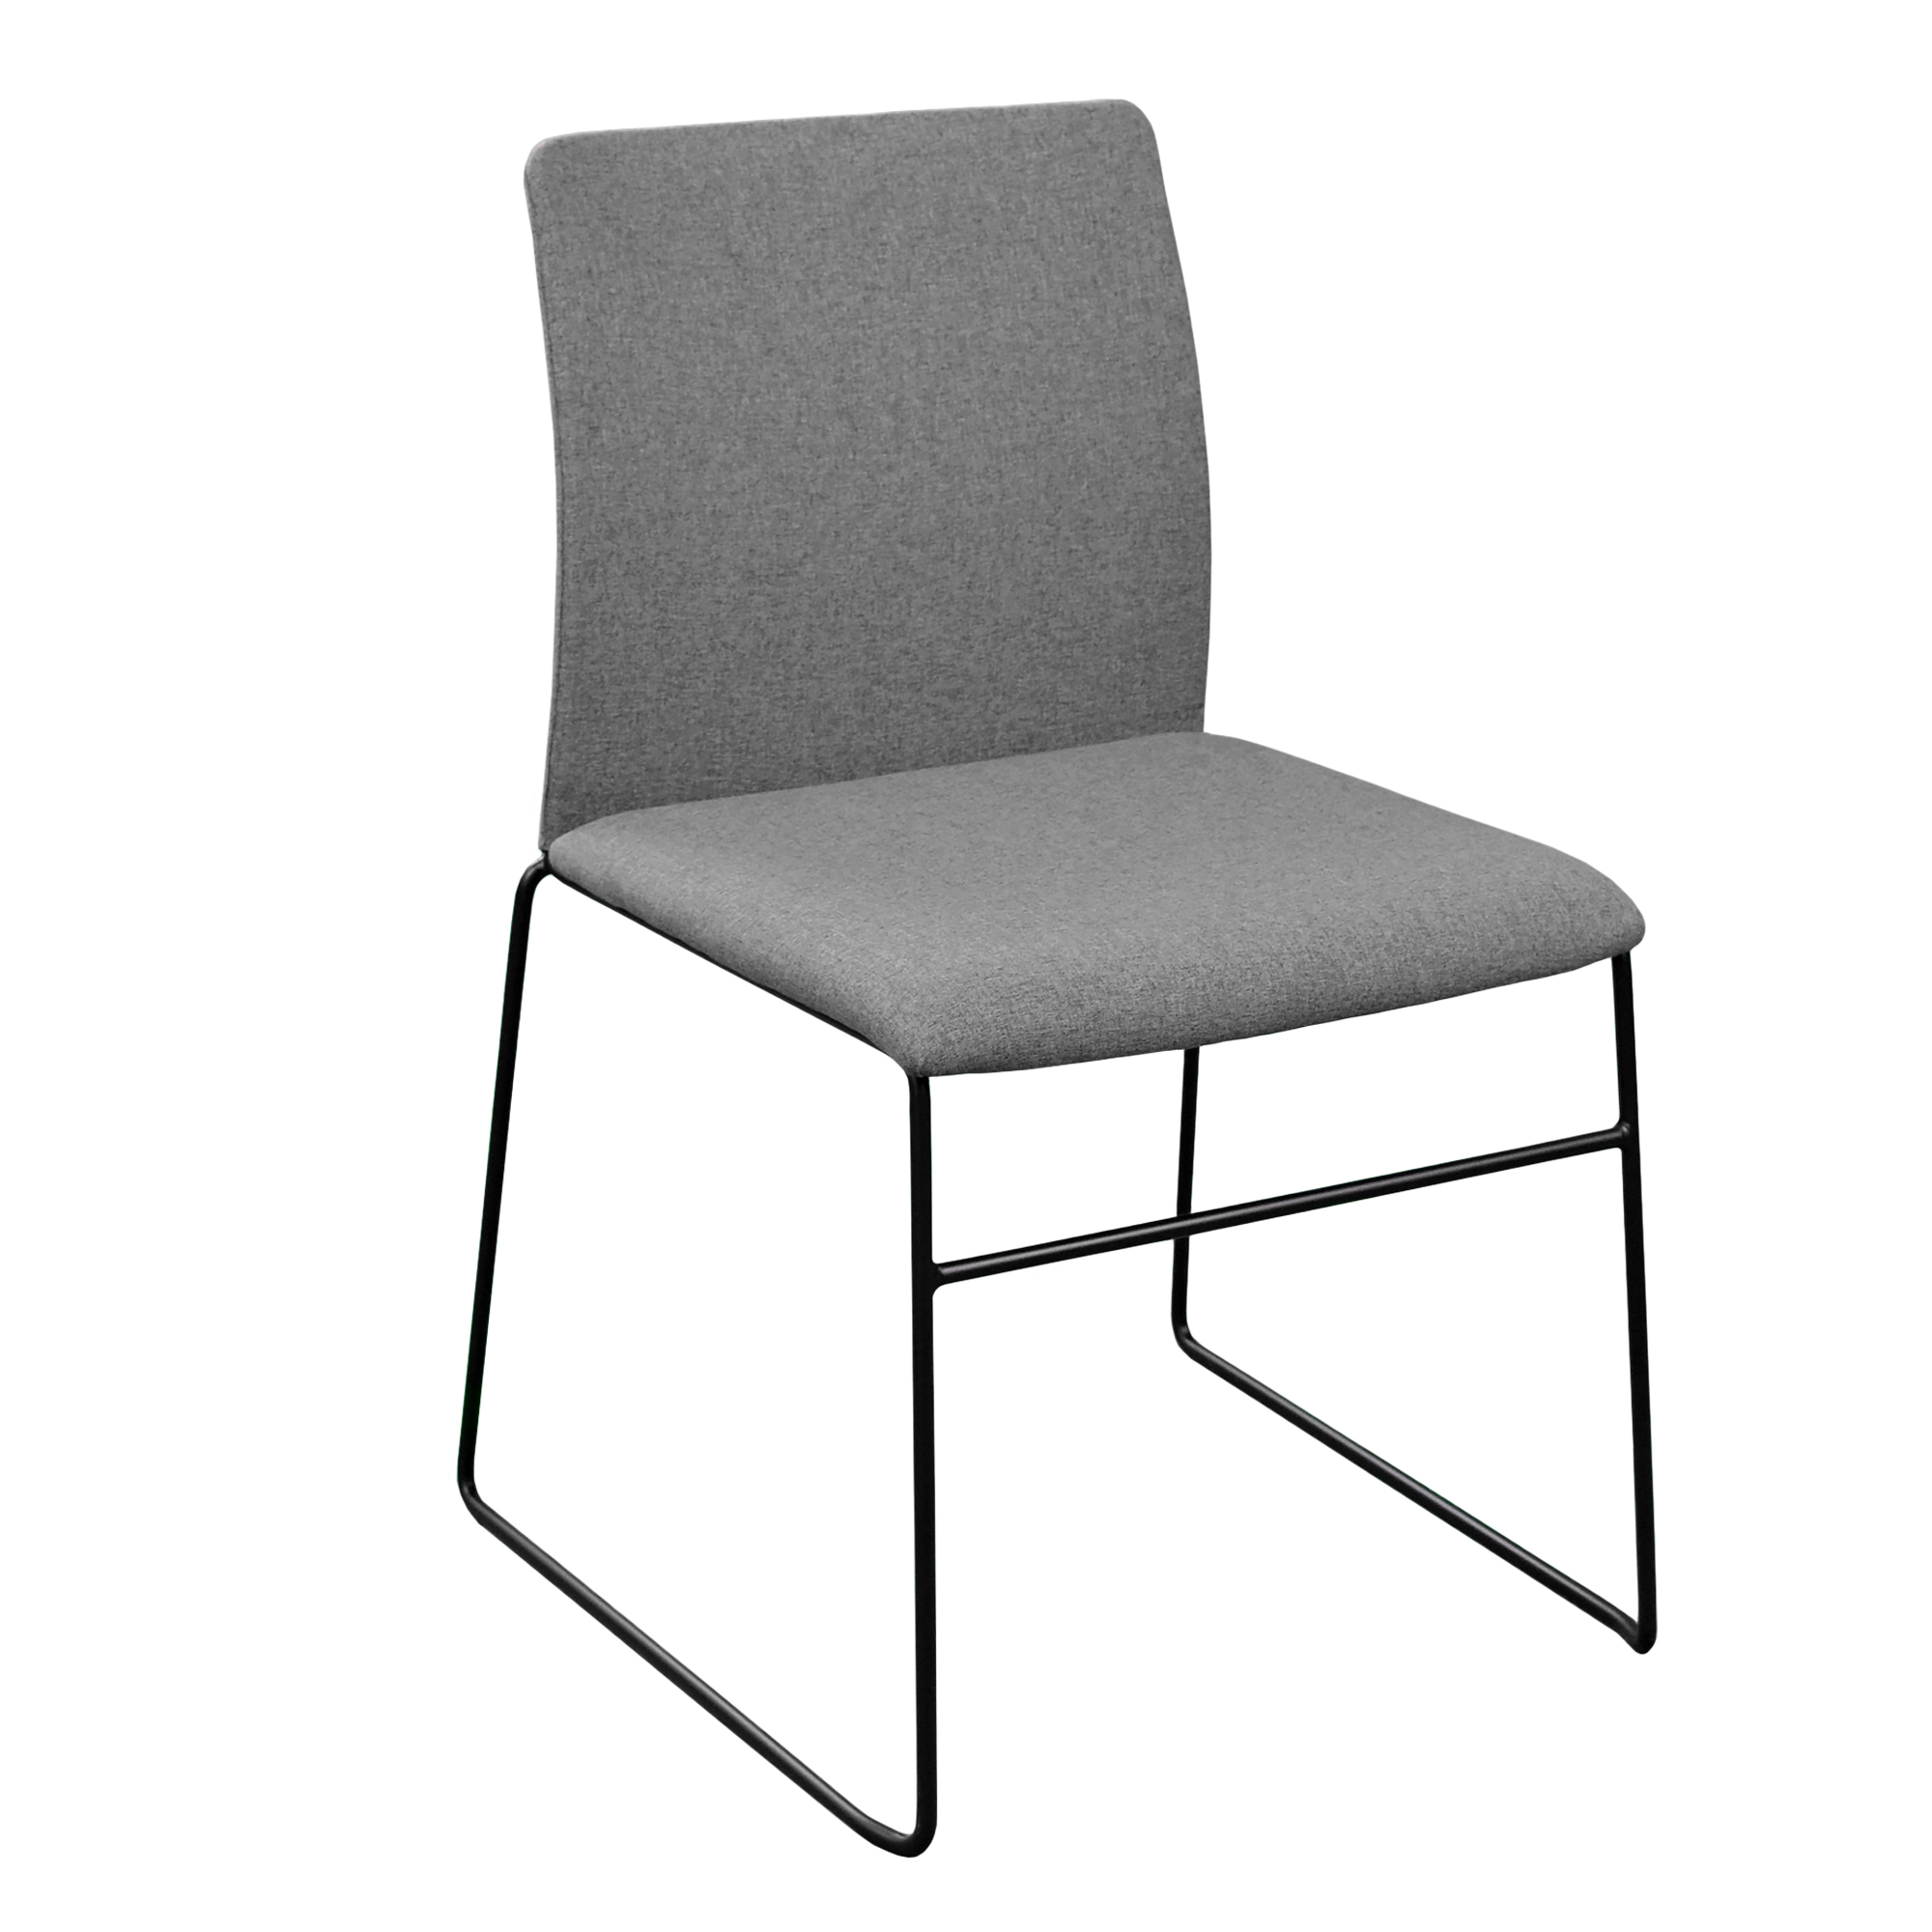 Офисный стул Deco C01 Grey